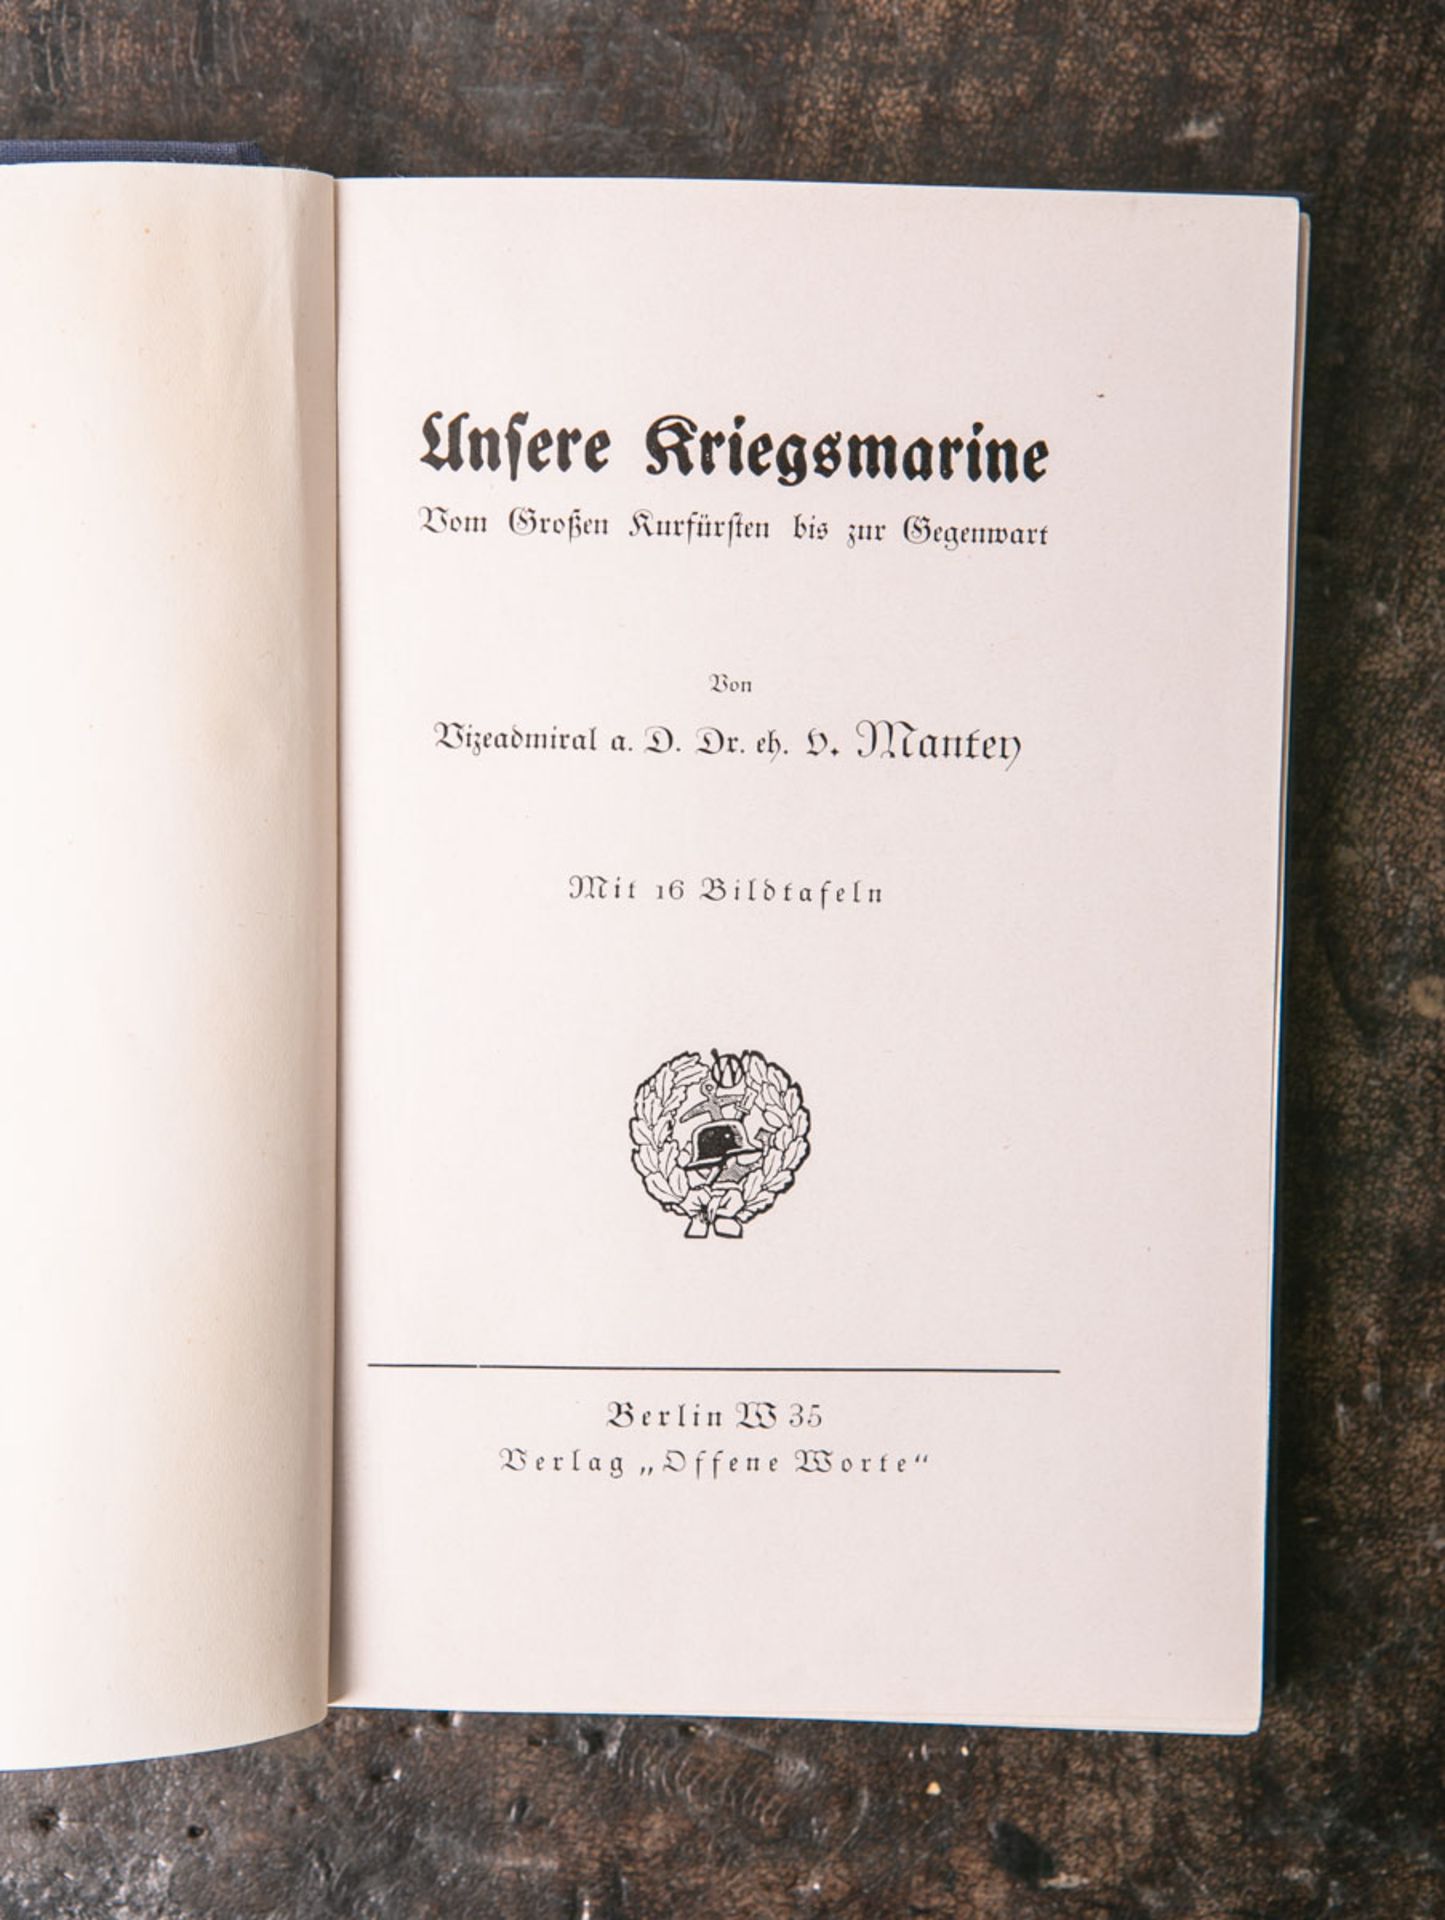 Manten, Vizeadmiral a.D. Dr eh. V., "Unsere Kriegsmarine. Vom Großen Kurfürsten bis zur